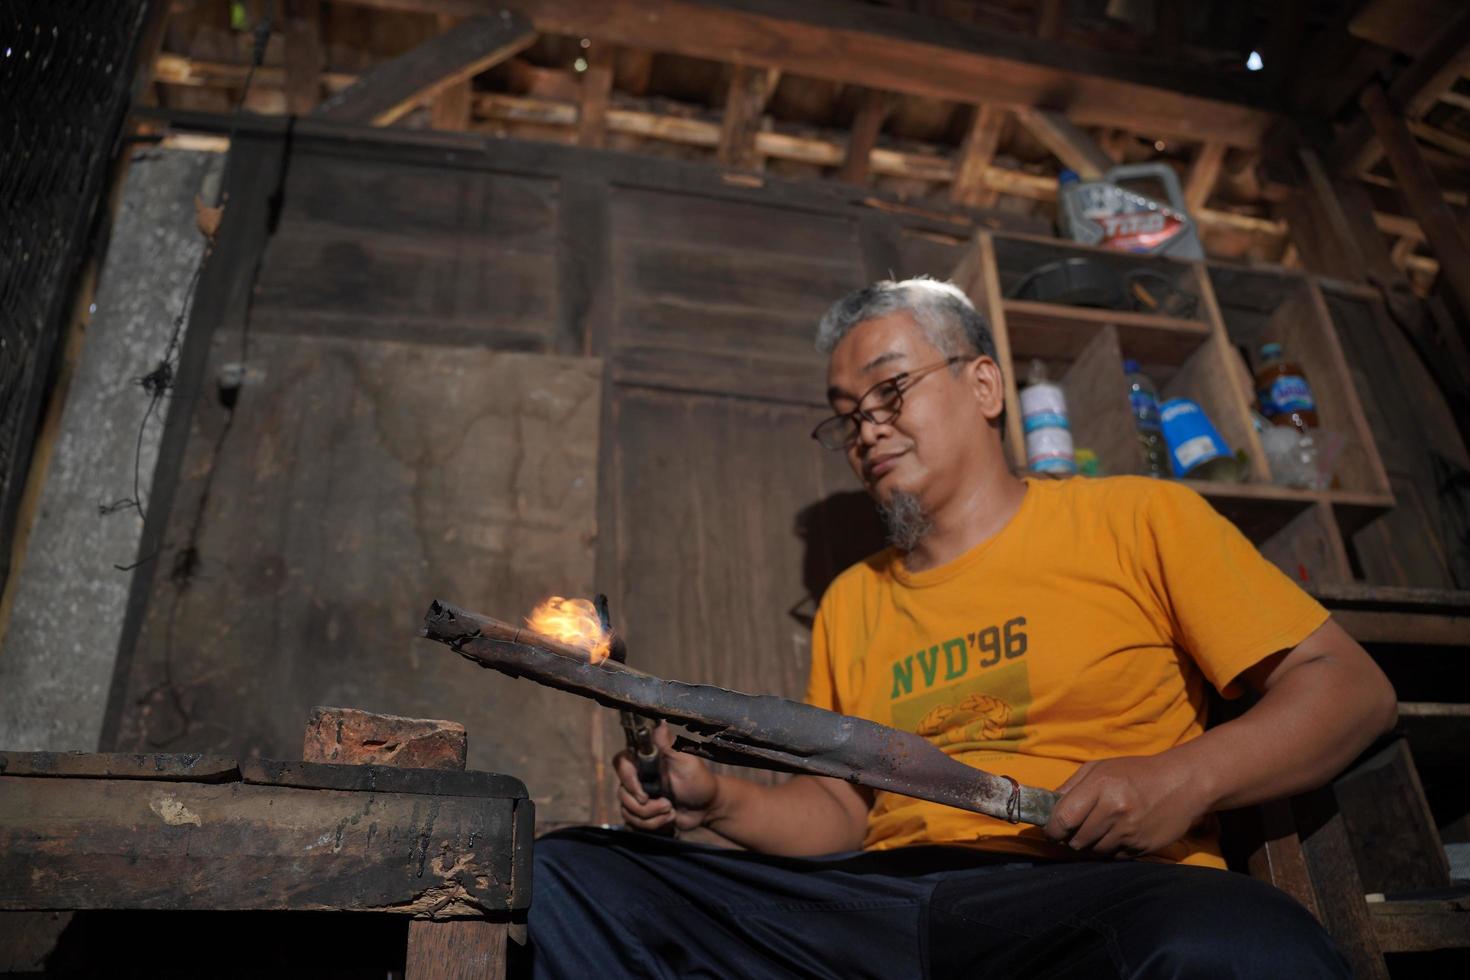 hantverkare är framställning keris i de verkstad. javanese traditionell vapen. bantul, indonesien - 25 augusti 2022 foto